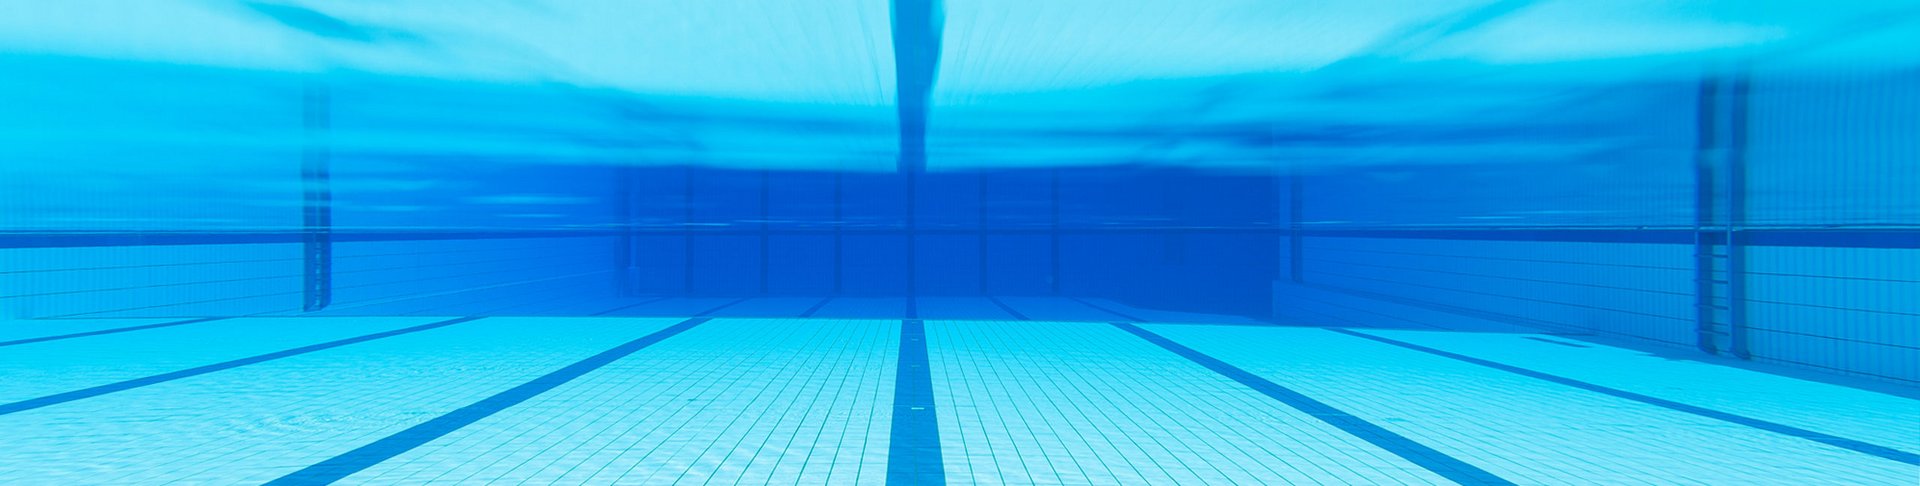 Ein leeres Schwimmbecken mit Bahnen von unter Wasser.